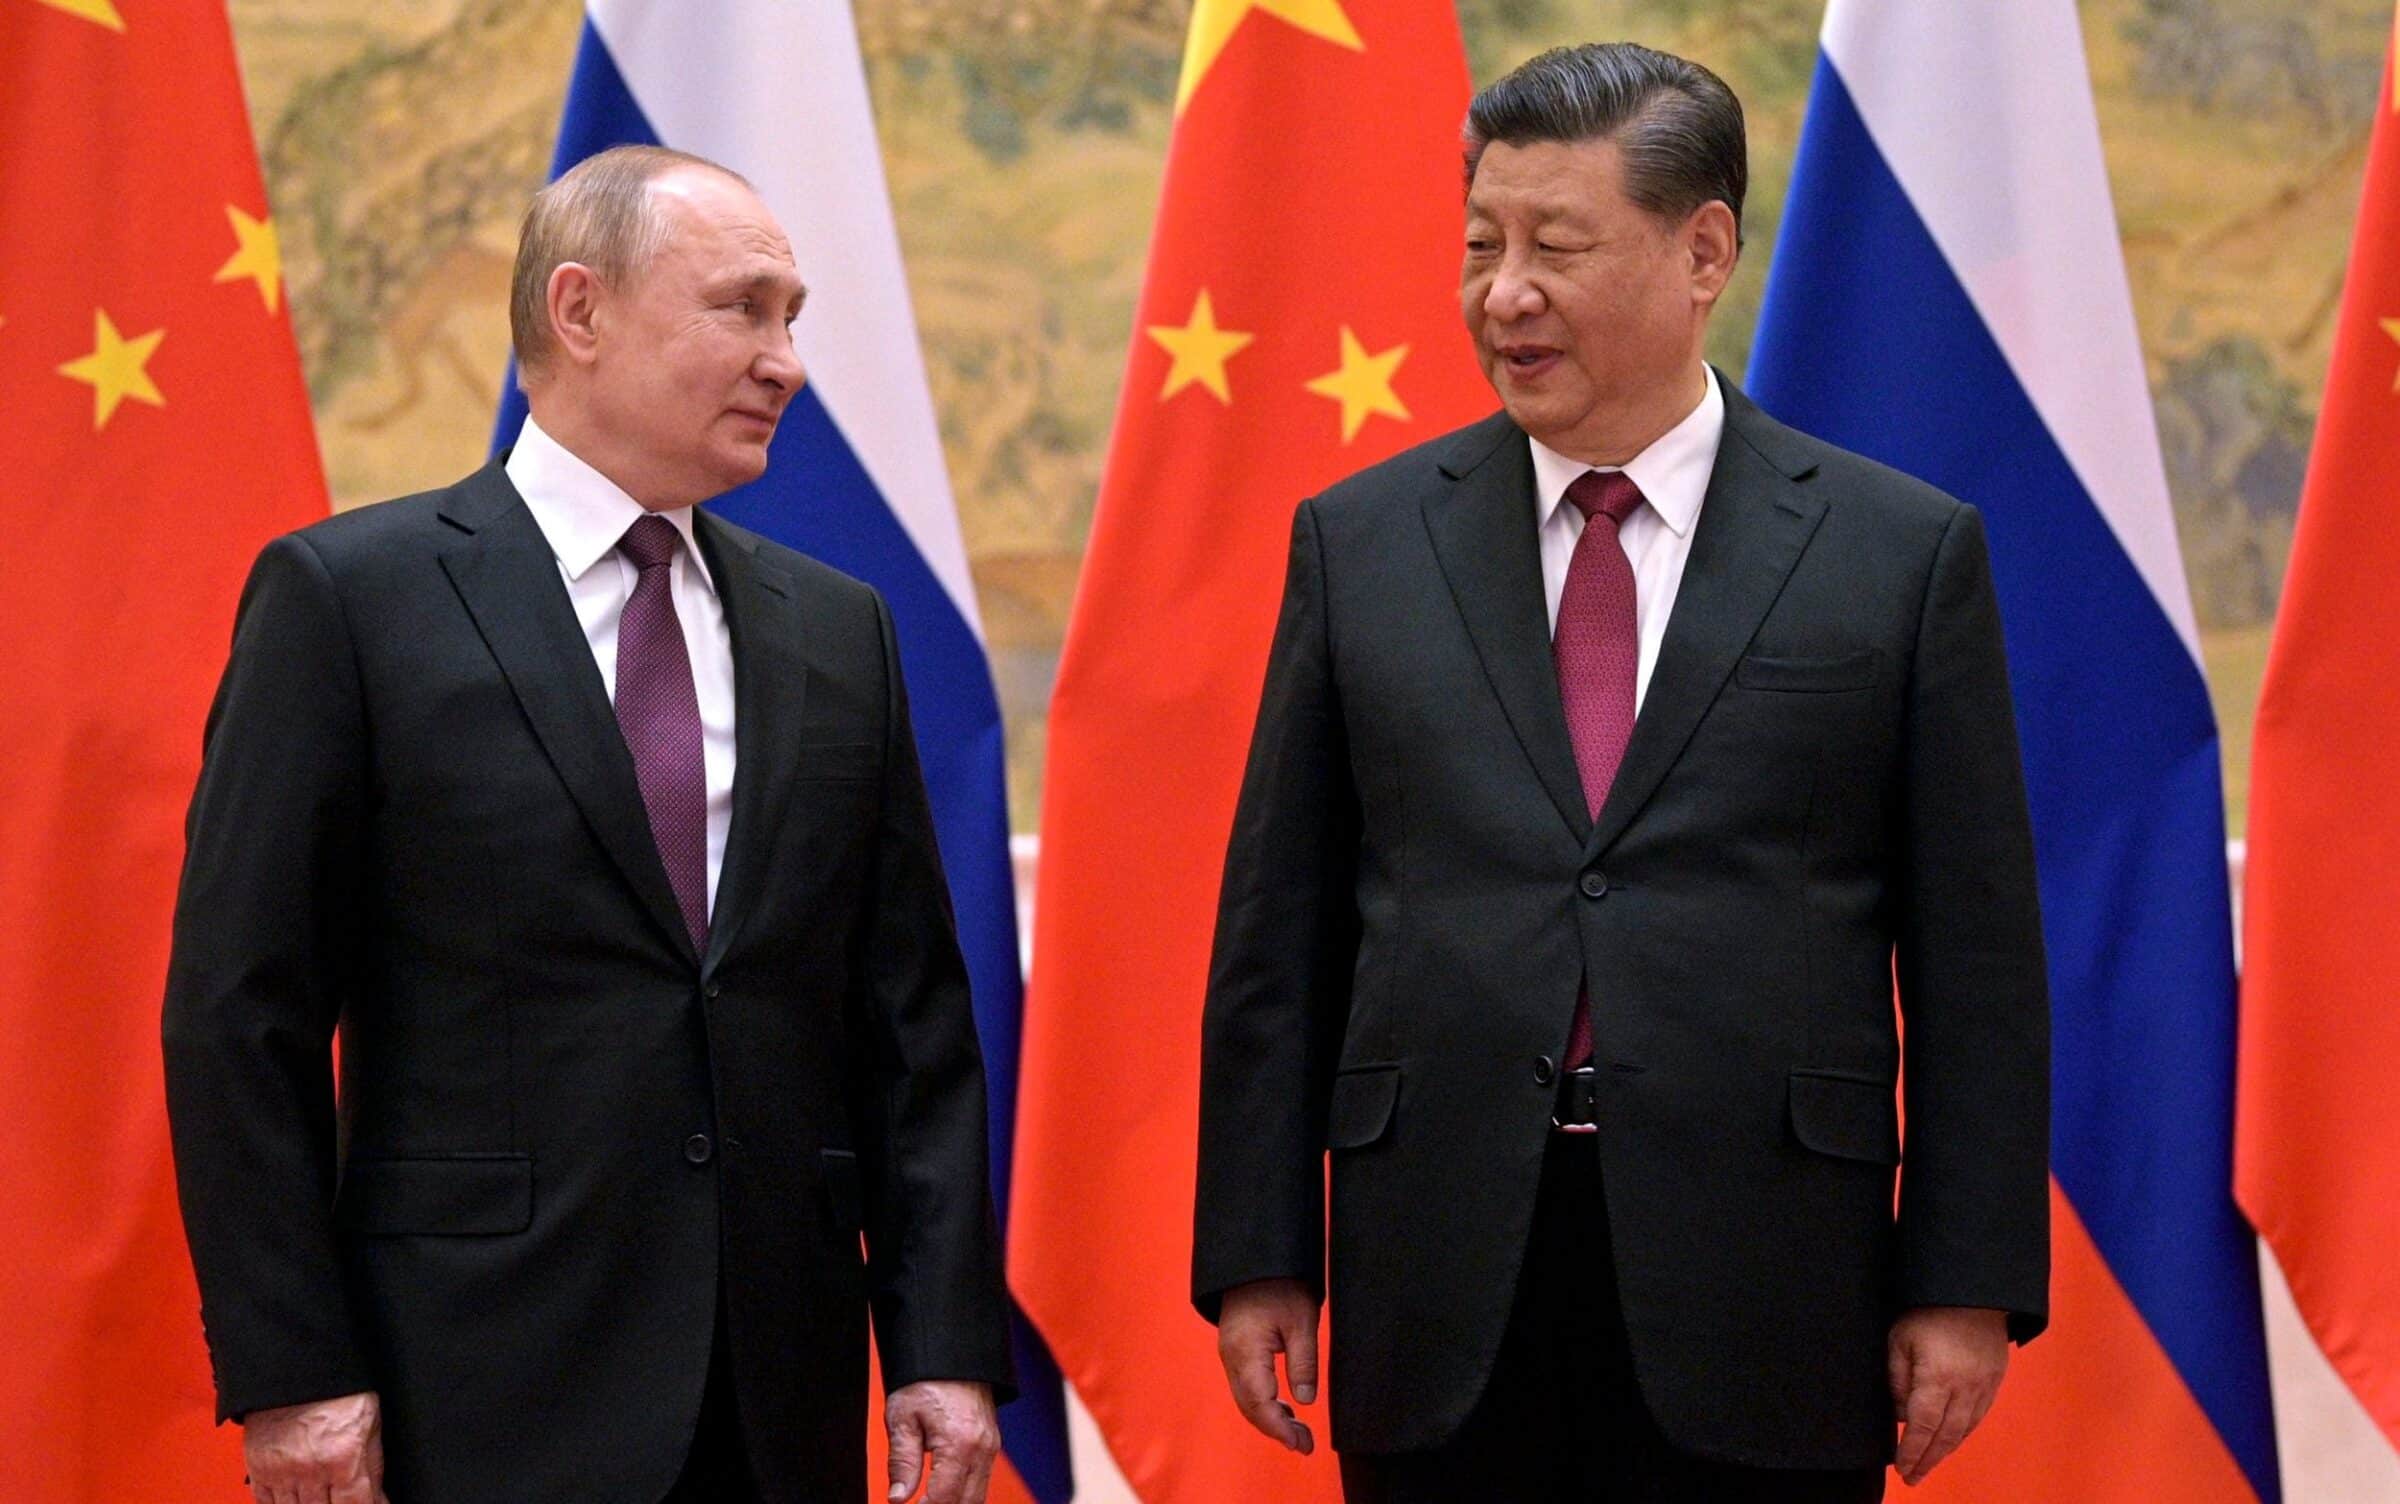 Guerra, Cina pronta a fornire aiuti militari alla Russia. Gli Stati Uniti avvertono: “Ci saranno conseguenze”